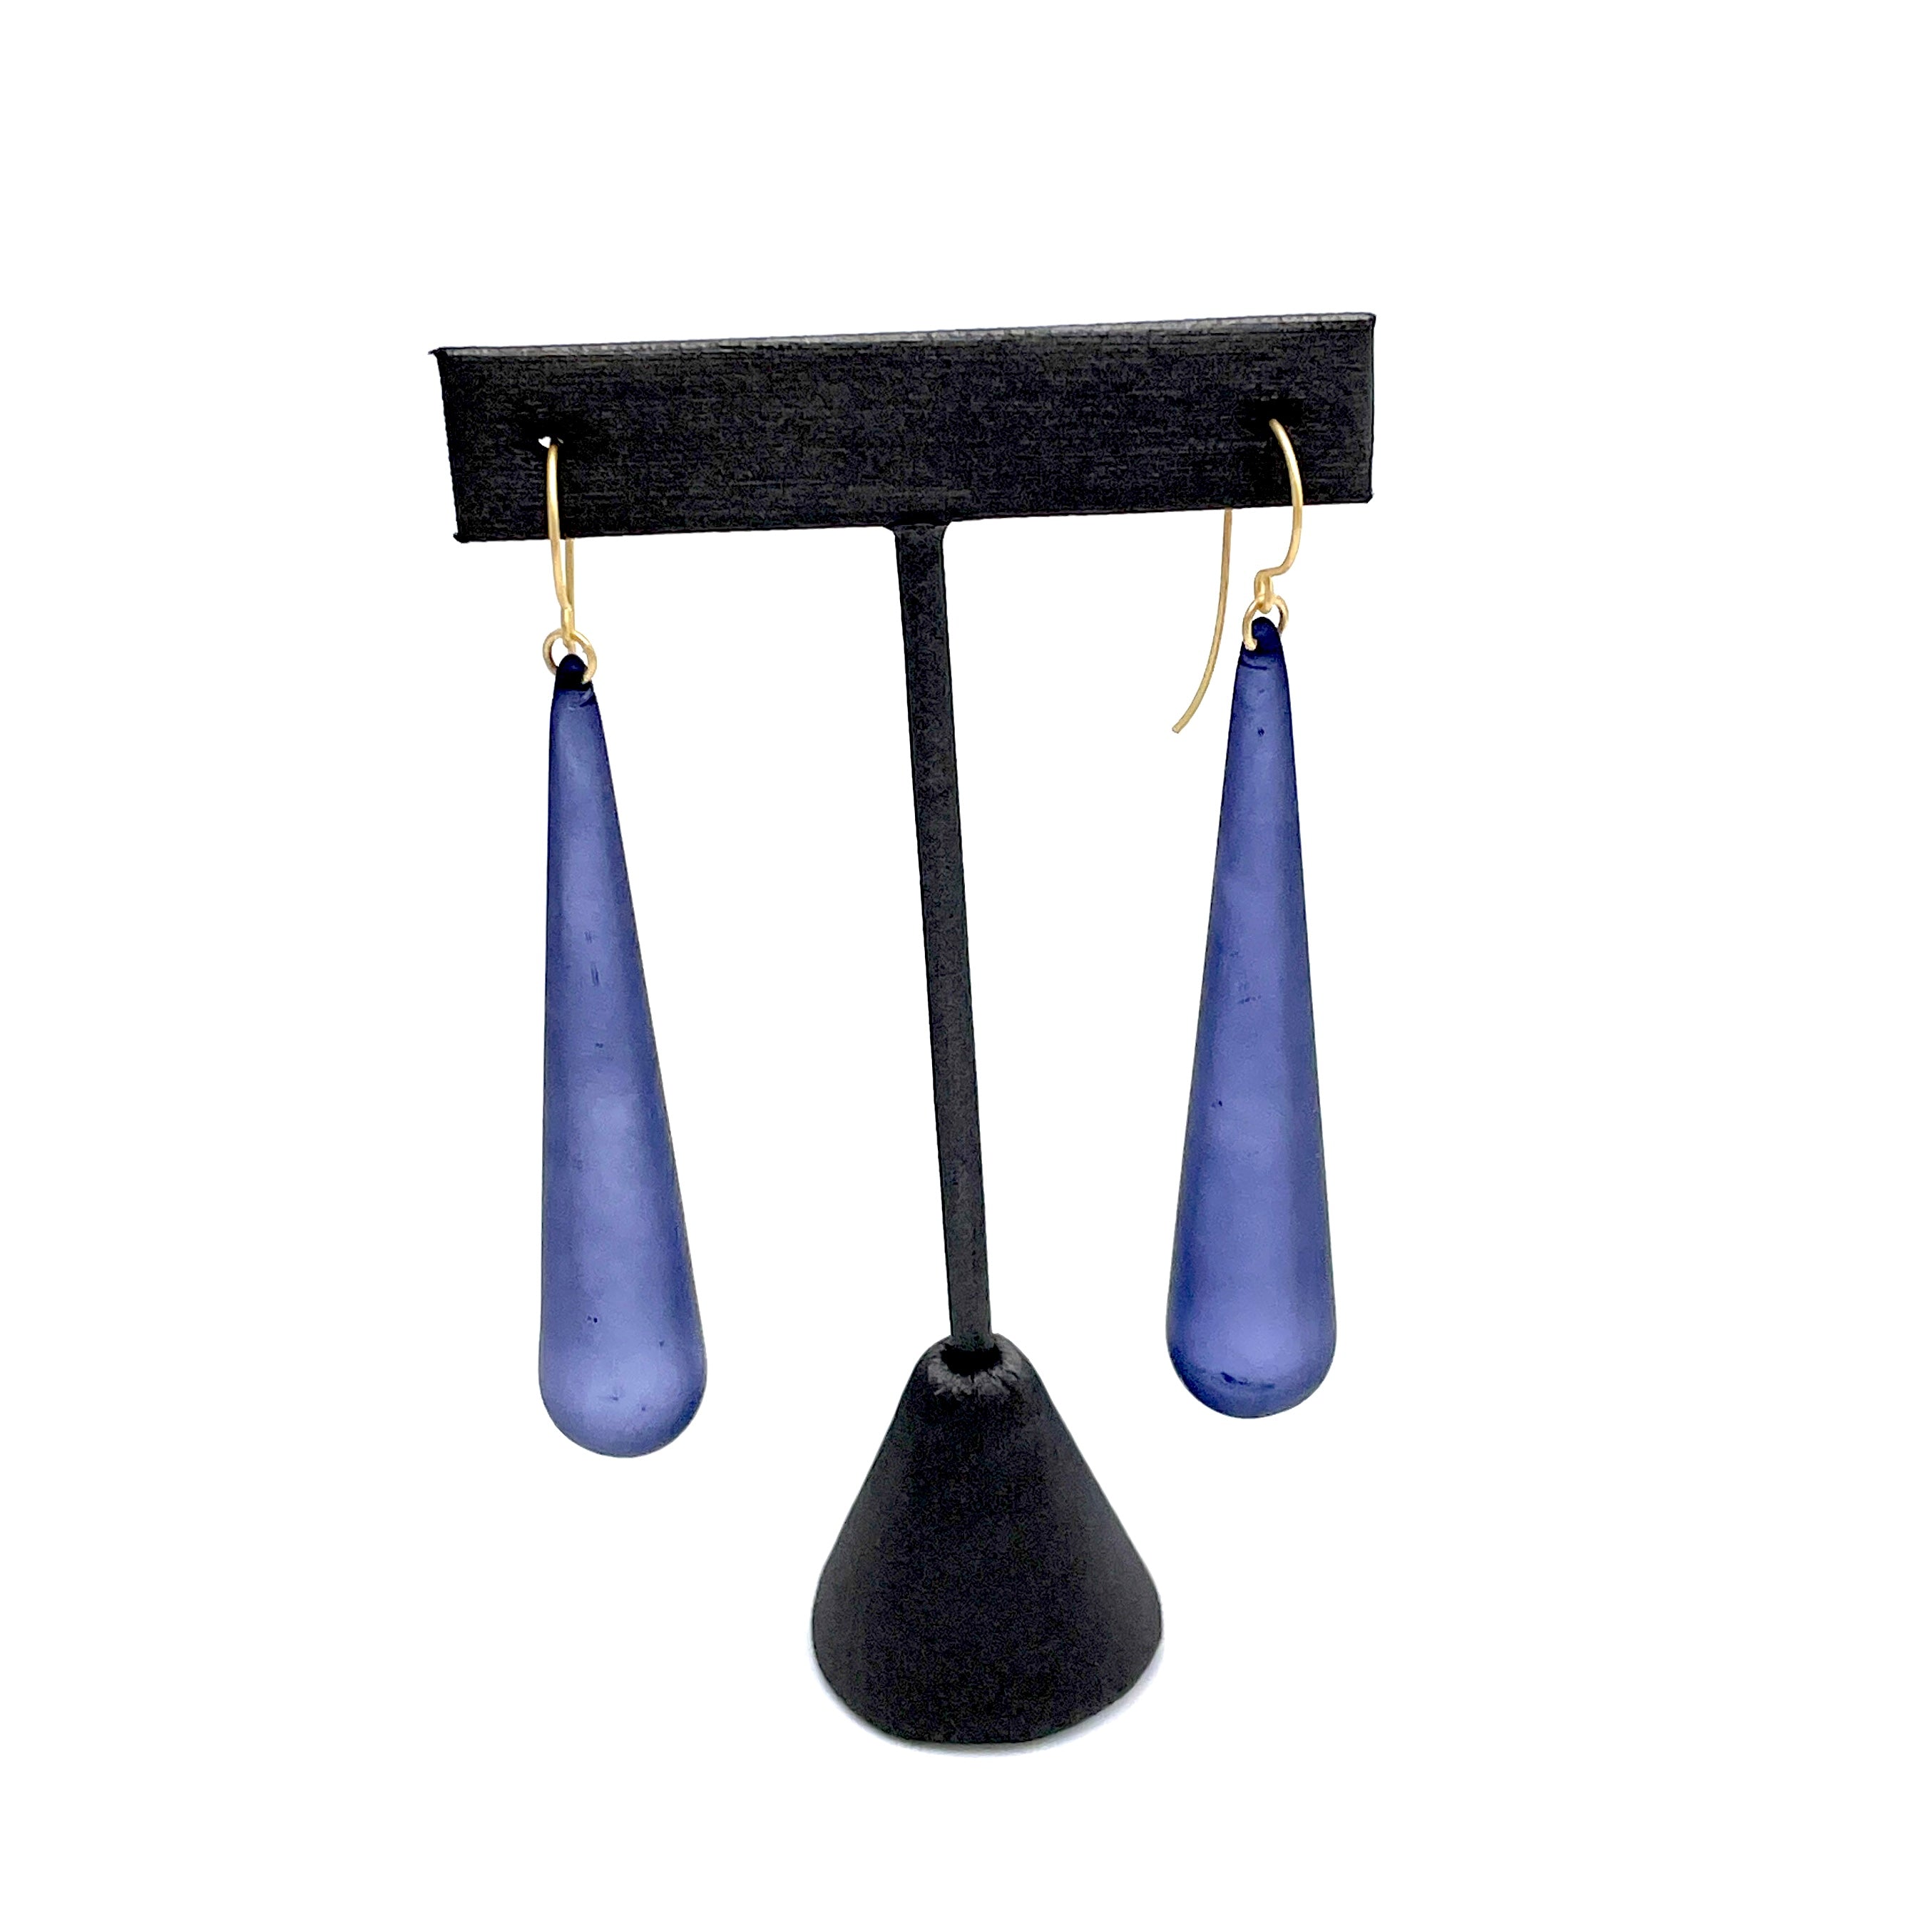 Blue Drop Earrings